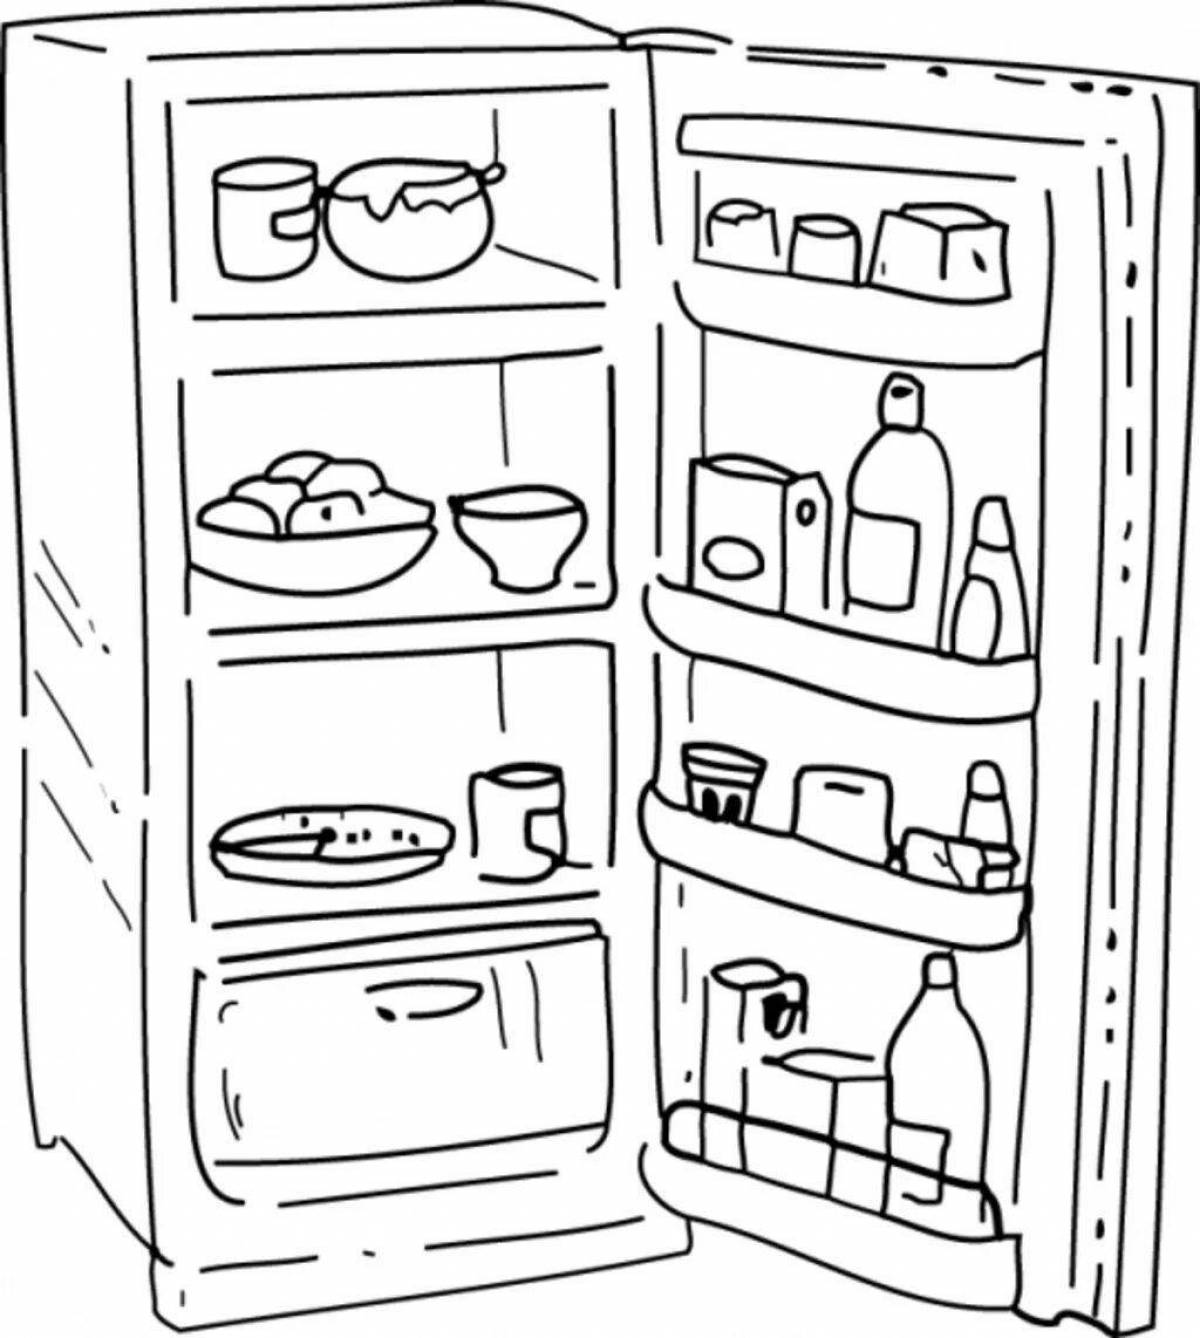 Food fridge #2